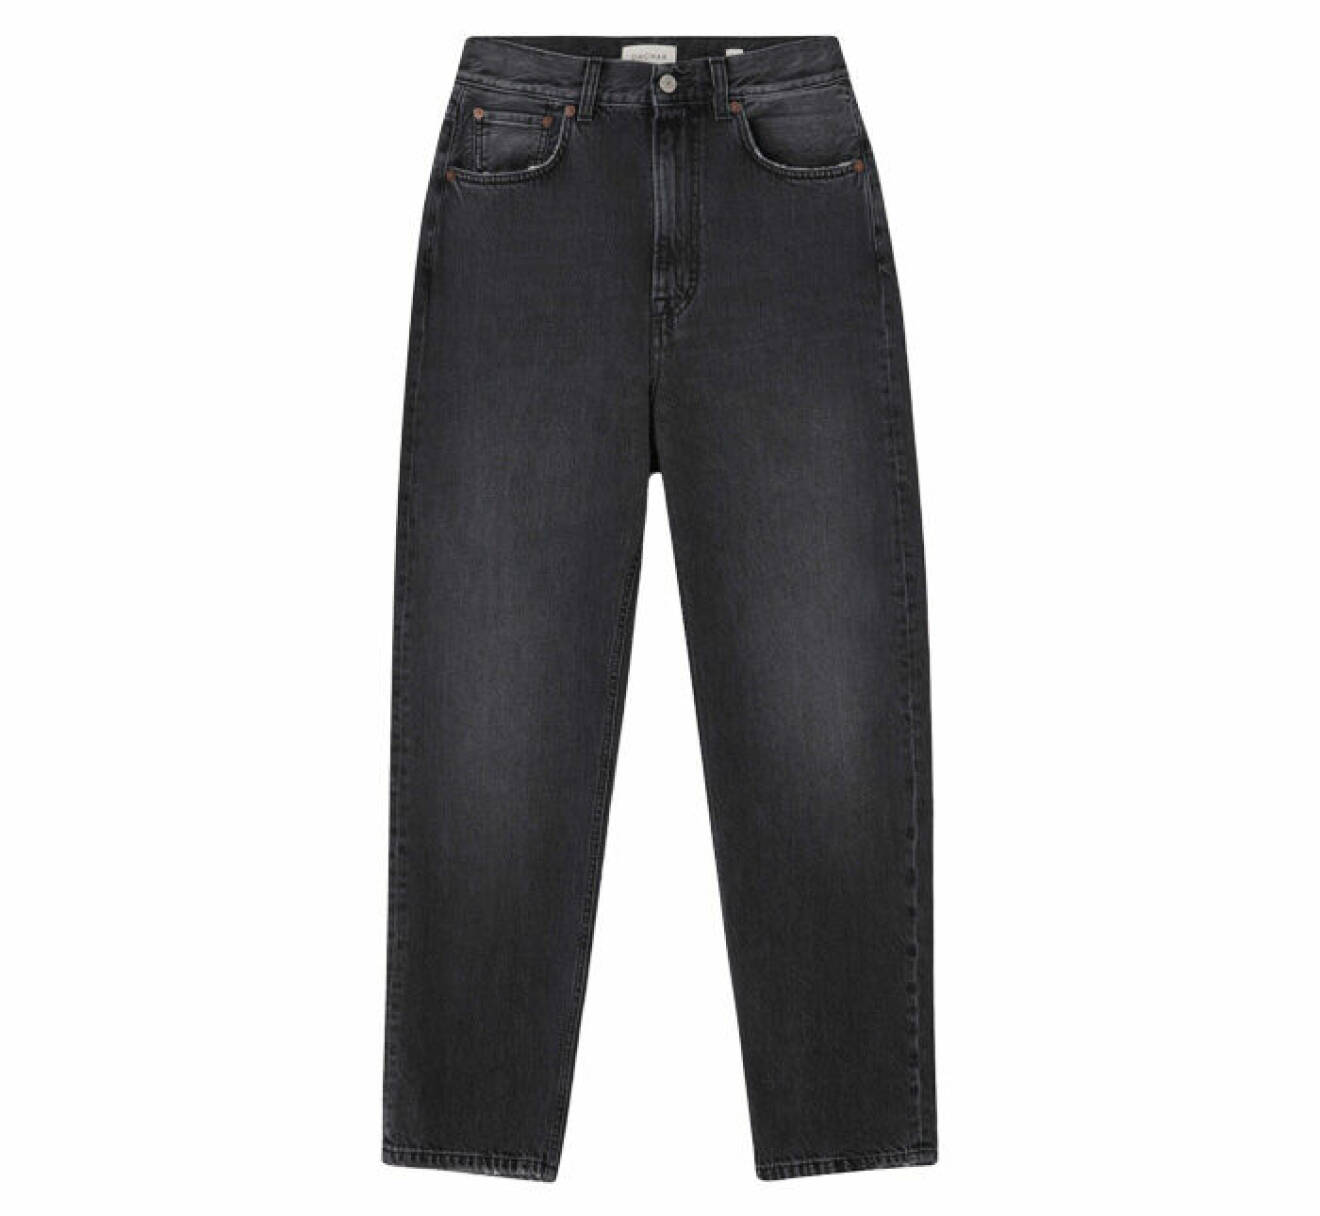 grå jeans med något avsmalnade ben nertill och hög midja från Dagmar